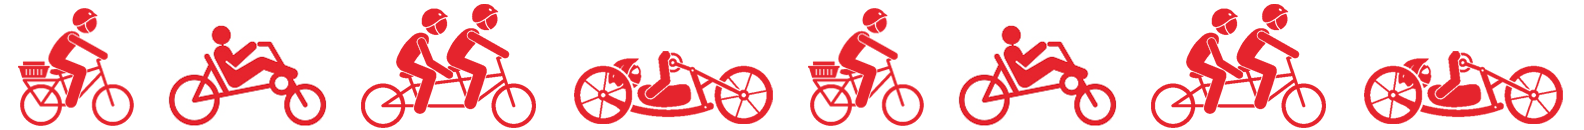 Frise med piktogrammer af forskellige mennesker på forskellige cykler i rød på hvid baggrund.